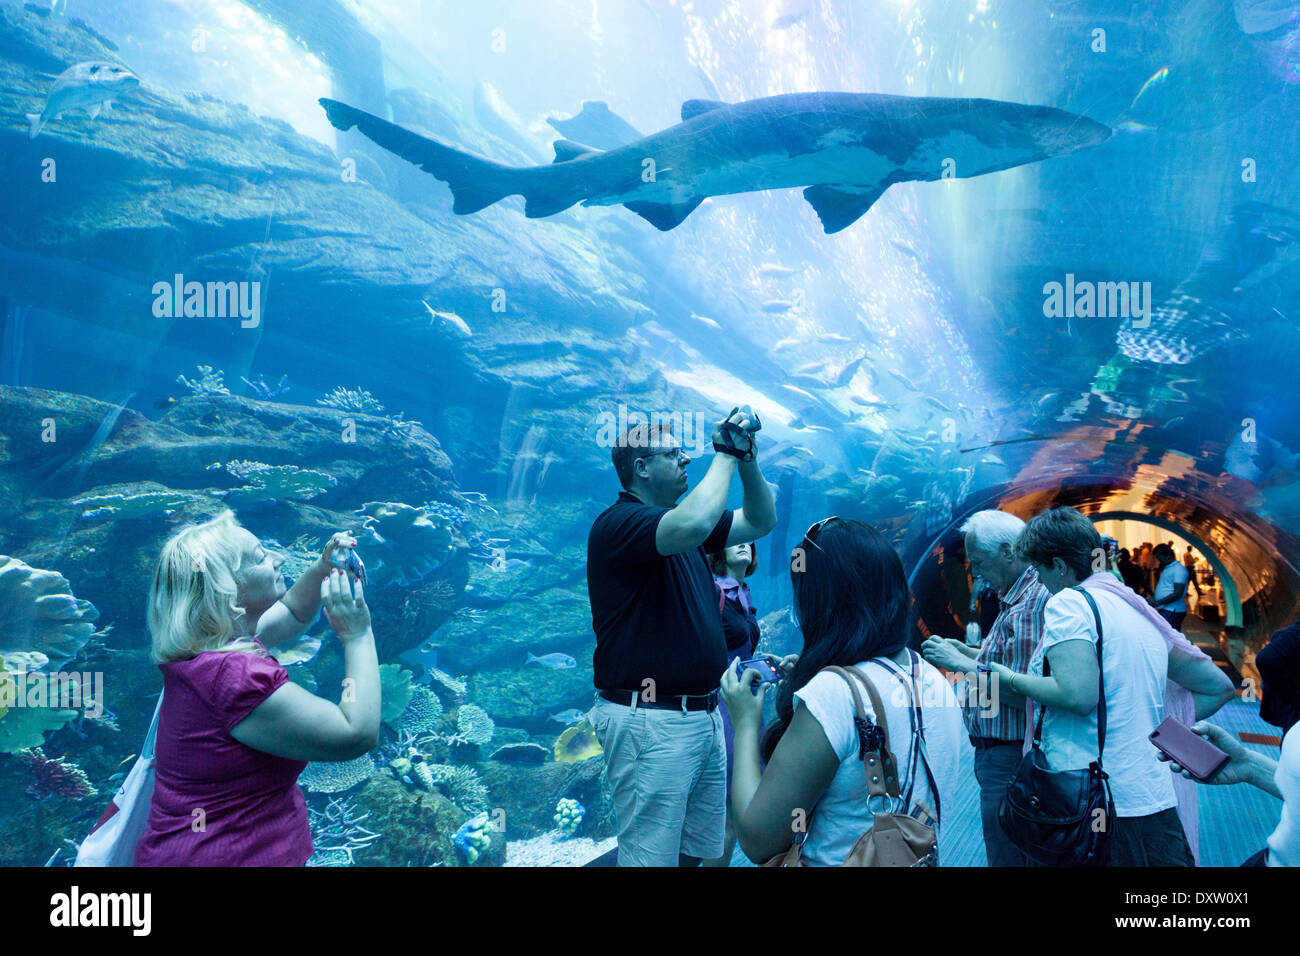 Menschen betrachten und Aufnehmen eines Fotos von einem Hai im Tunnel, Vereinigte Arabische Emirate, UAE, Dubai Mall, Dubai Aquarium Stockfoto